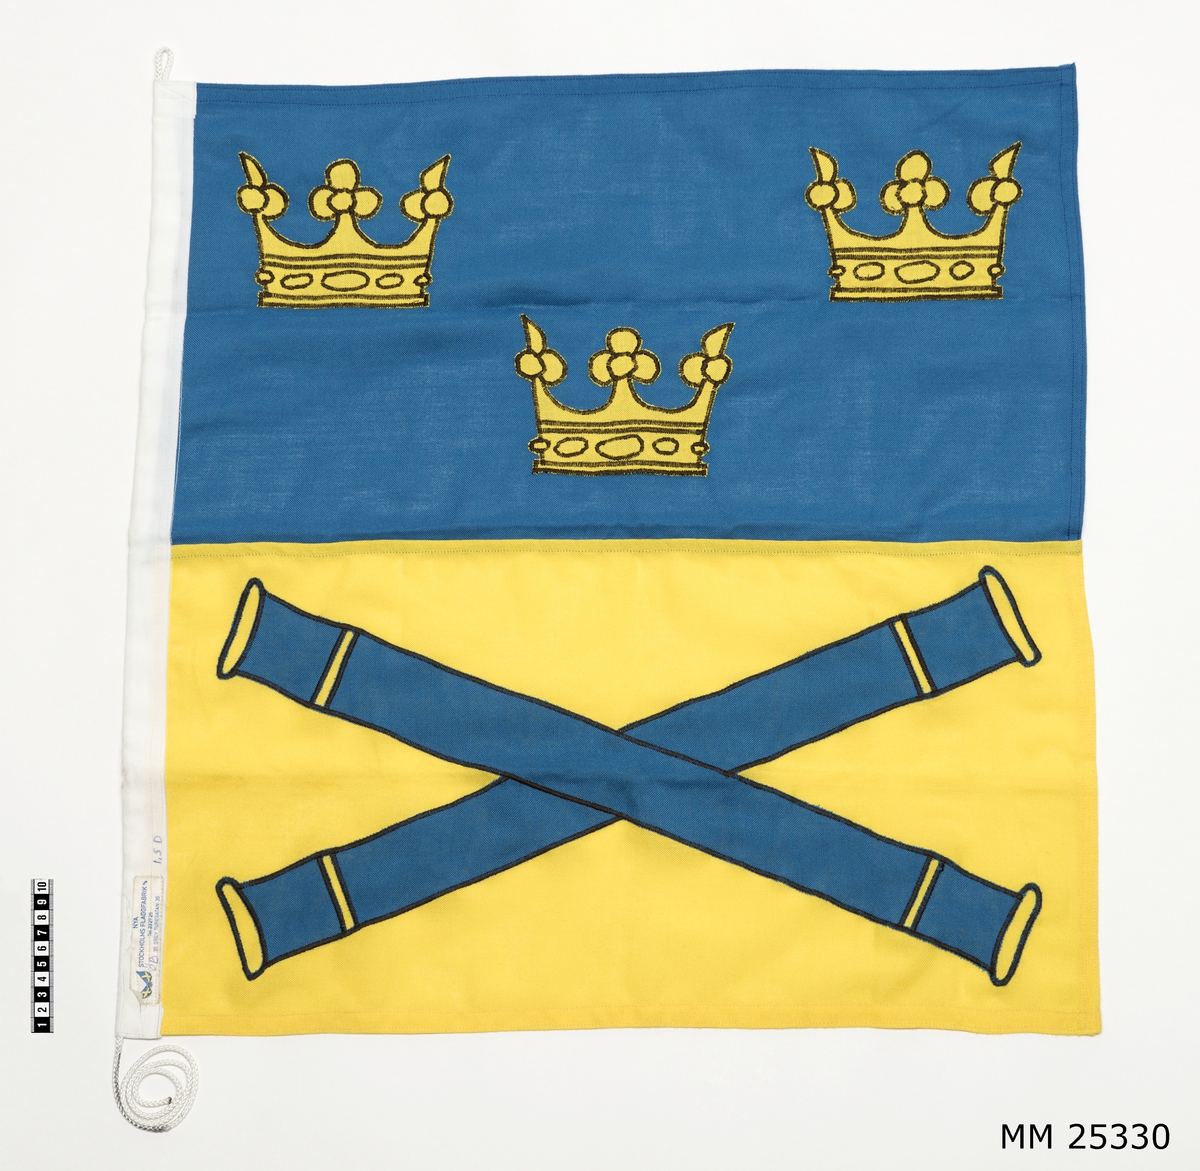 Befälstecken 1,5 dukars, Överbefälhavarens flagga. Flagga av bomull med vitt nylonlik samt vit nylonlina. Rektangulär flagga med två fält. Övre fältet blått med motiv av tre kronor i gult. Nedre fältet gult med två korslagda kanonrör i blått. Liket märkt med lapp: "Nya Stockholms flaggfabrik A/B Tel 232725, 35 Grev Turegatan 35". Samt märkt med penna "ÖB" samt "1,5 D".